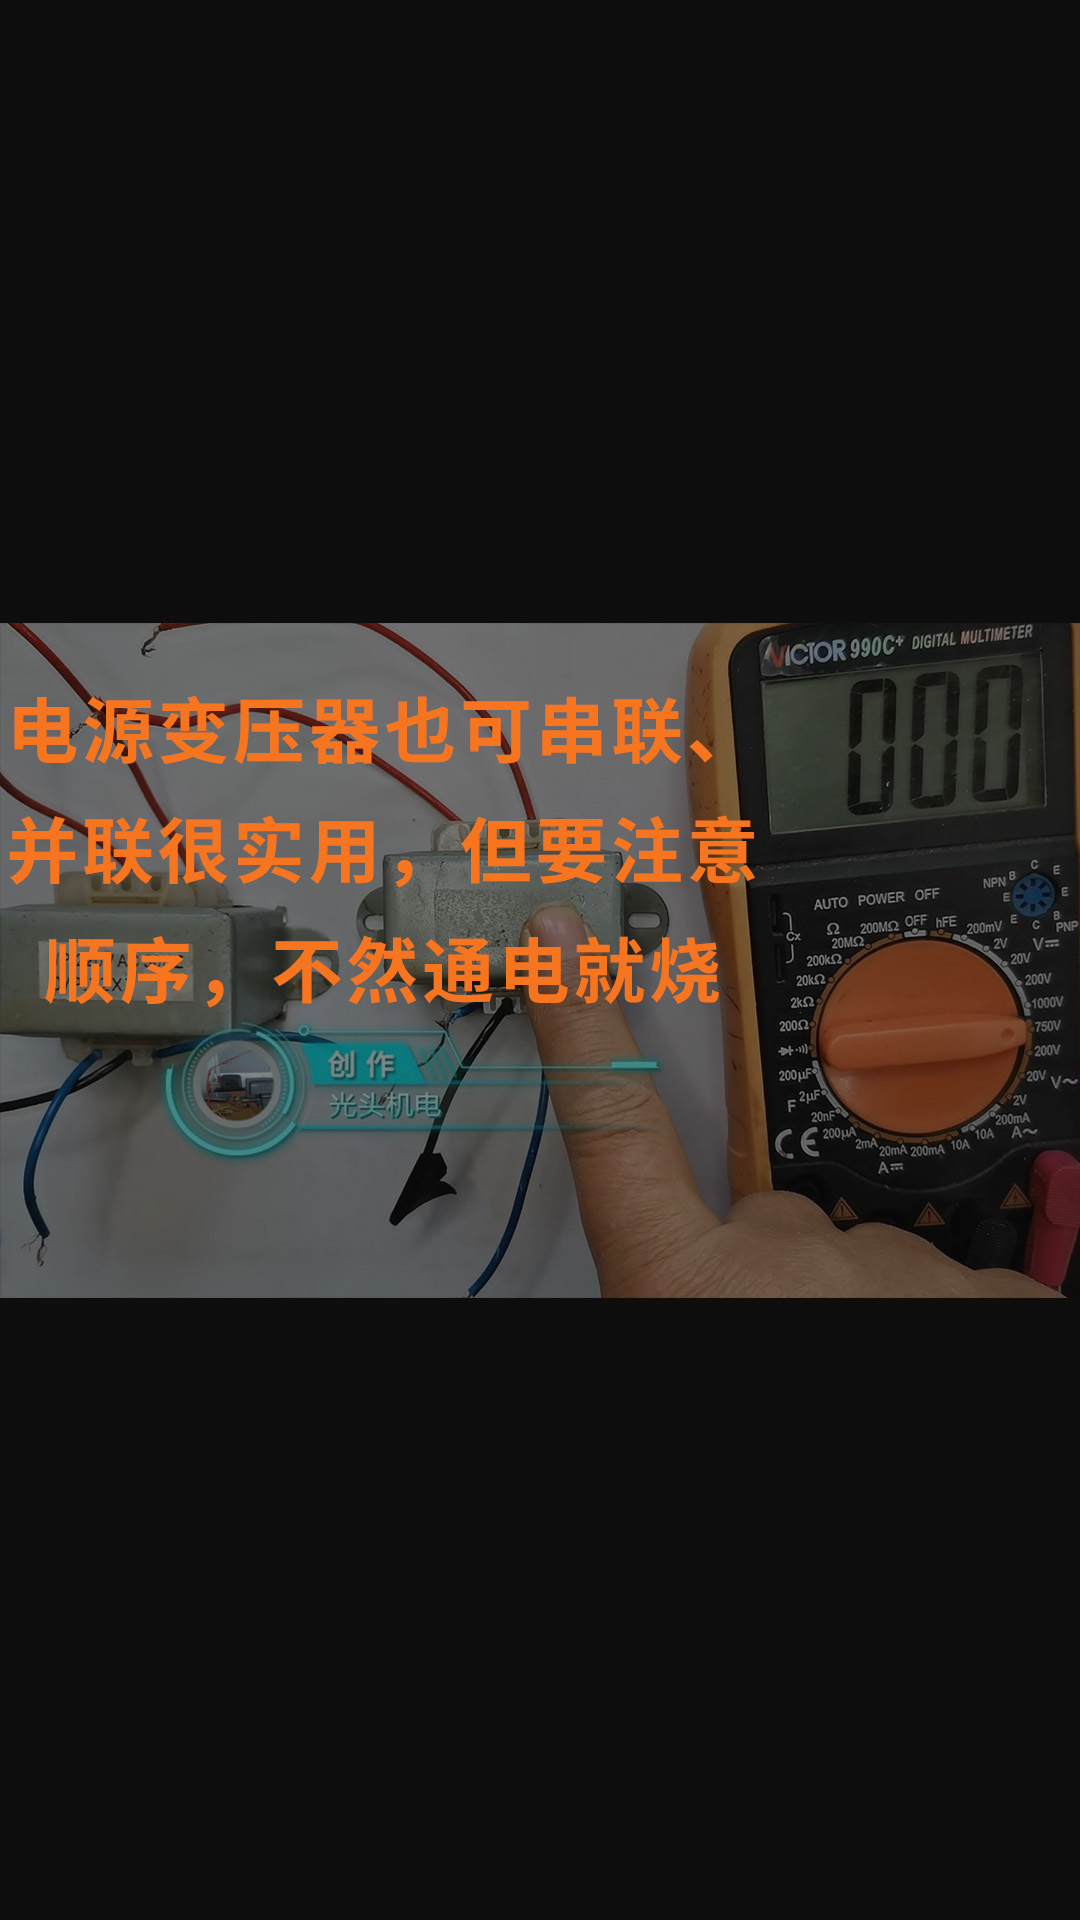 电源变压器也可串联、并联很实用，但要注意顺序，不然通电就烧 